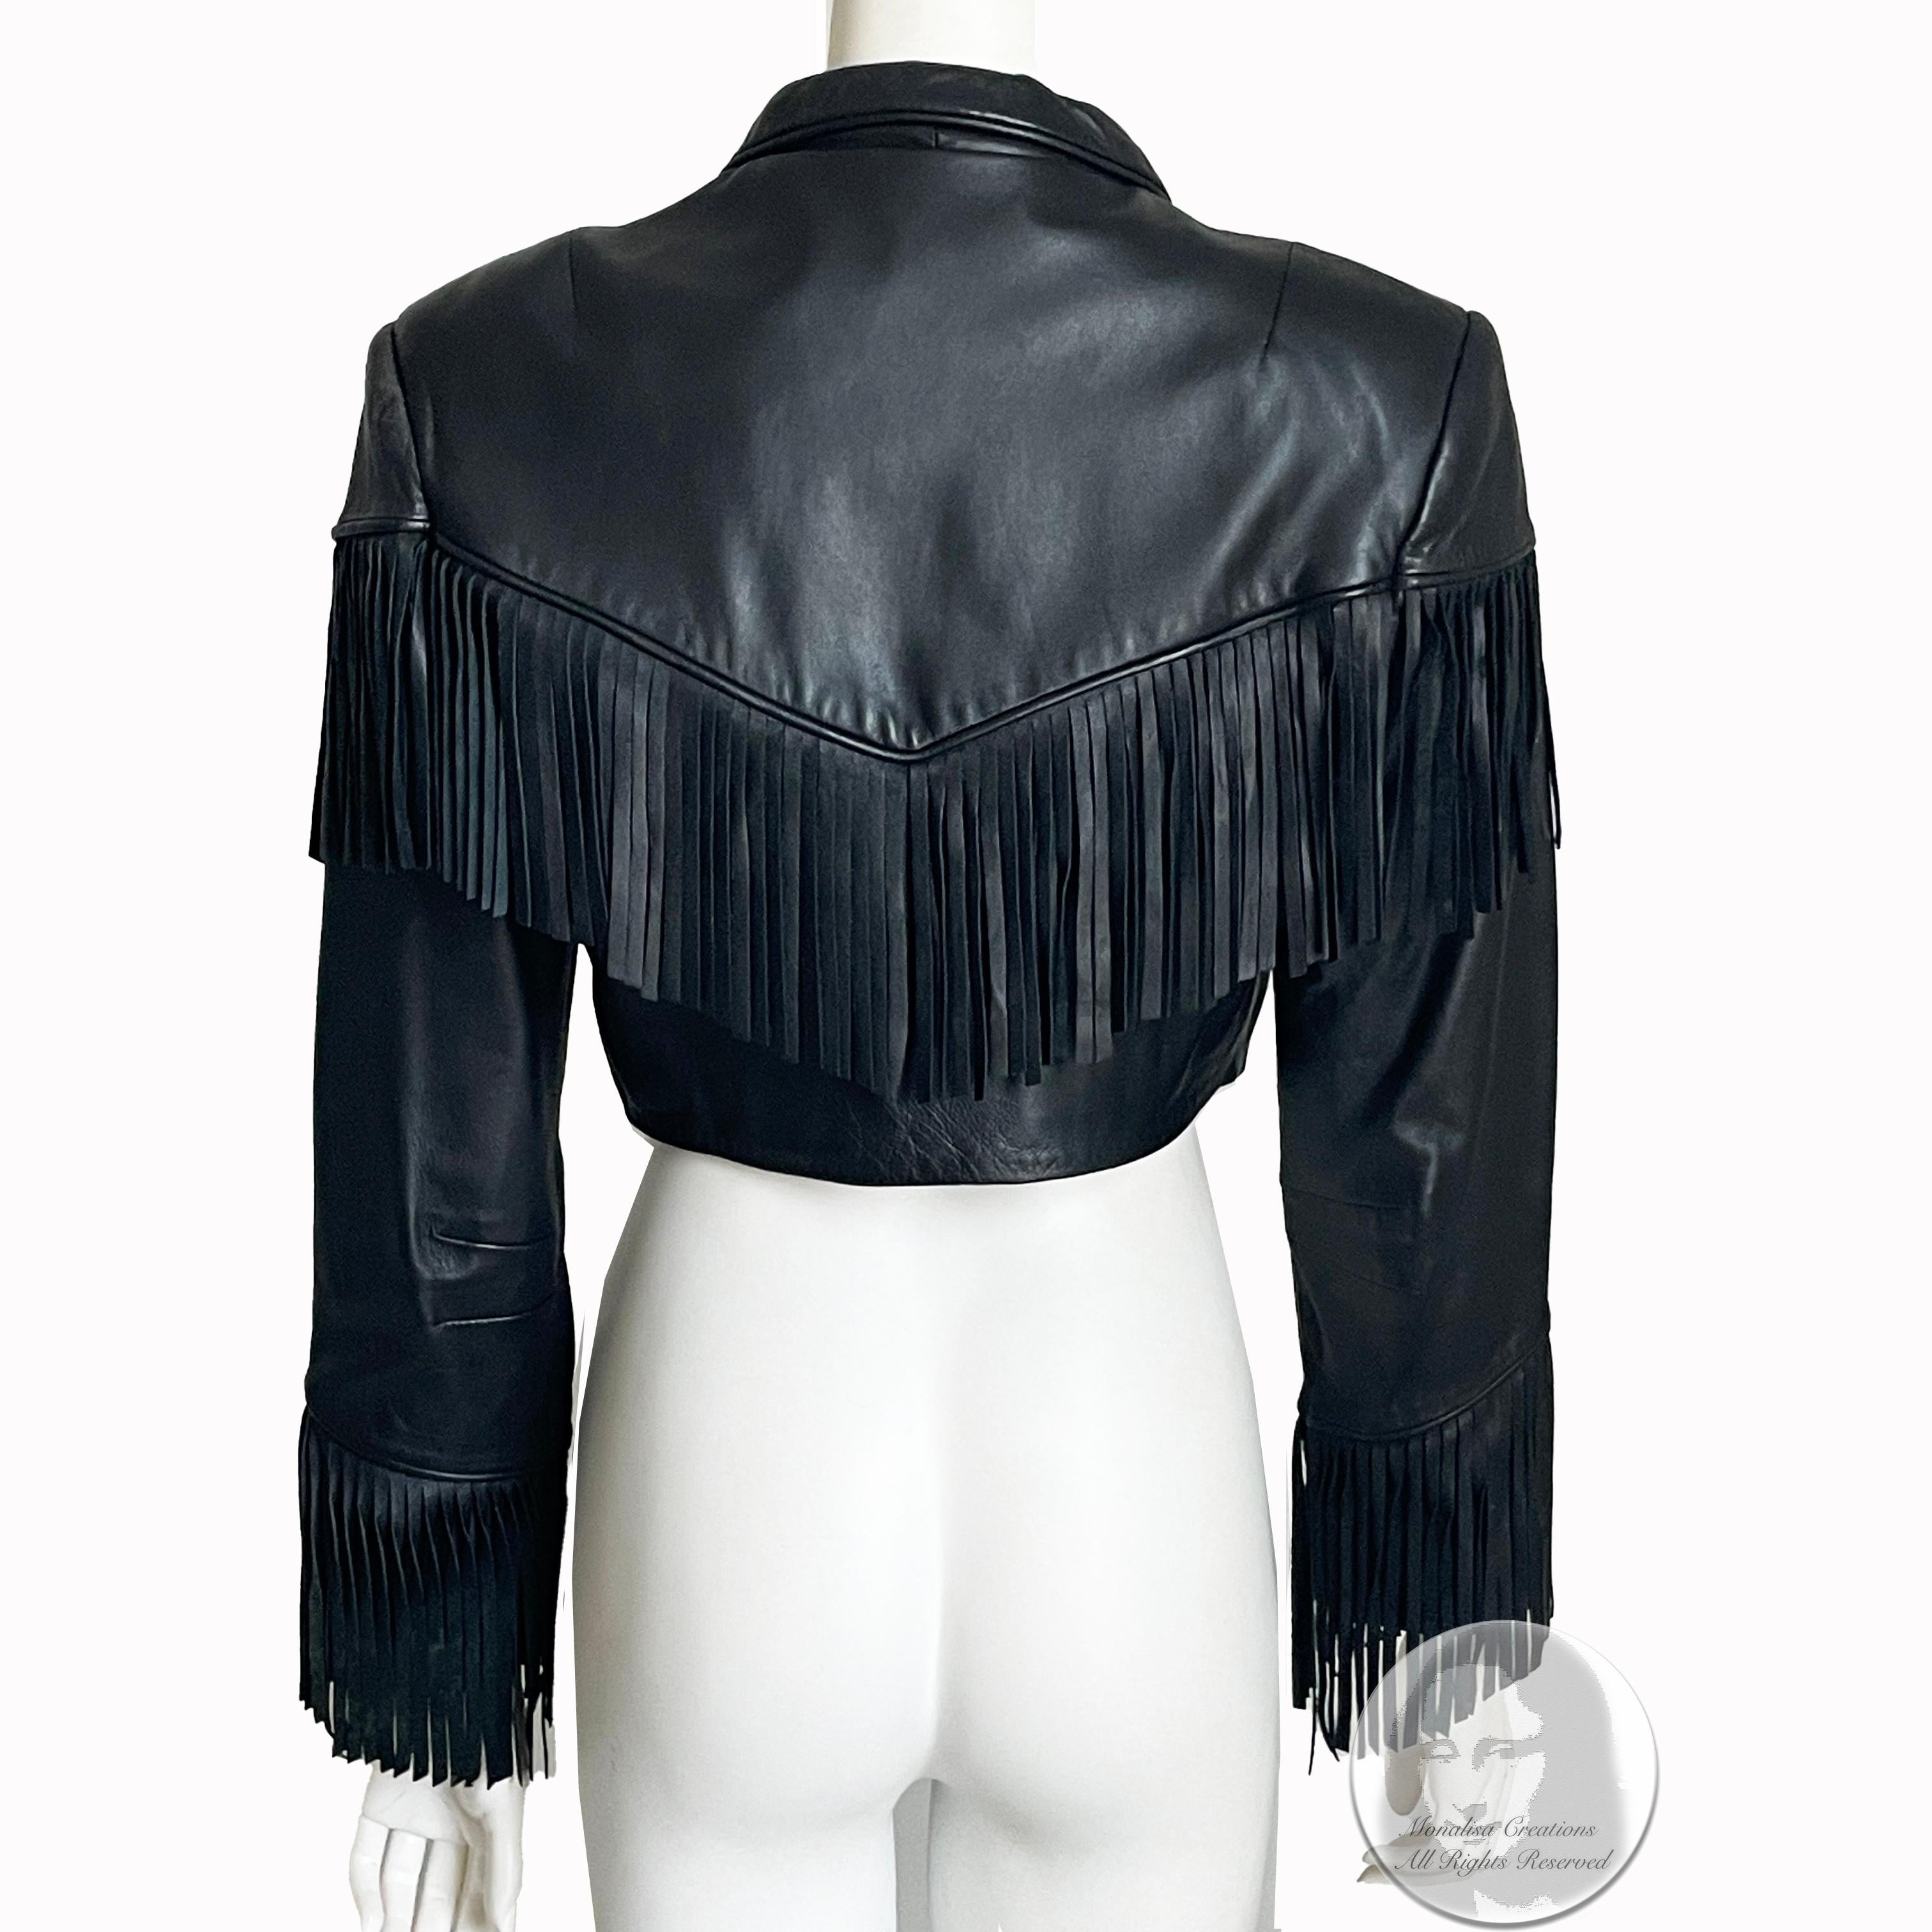 Norma Kamali Leather Jacket Black Cropped Fringe Vintage 1990s Rare Rocker Chic For Sale 3